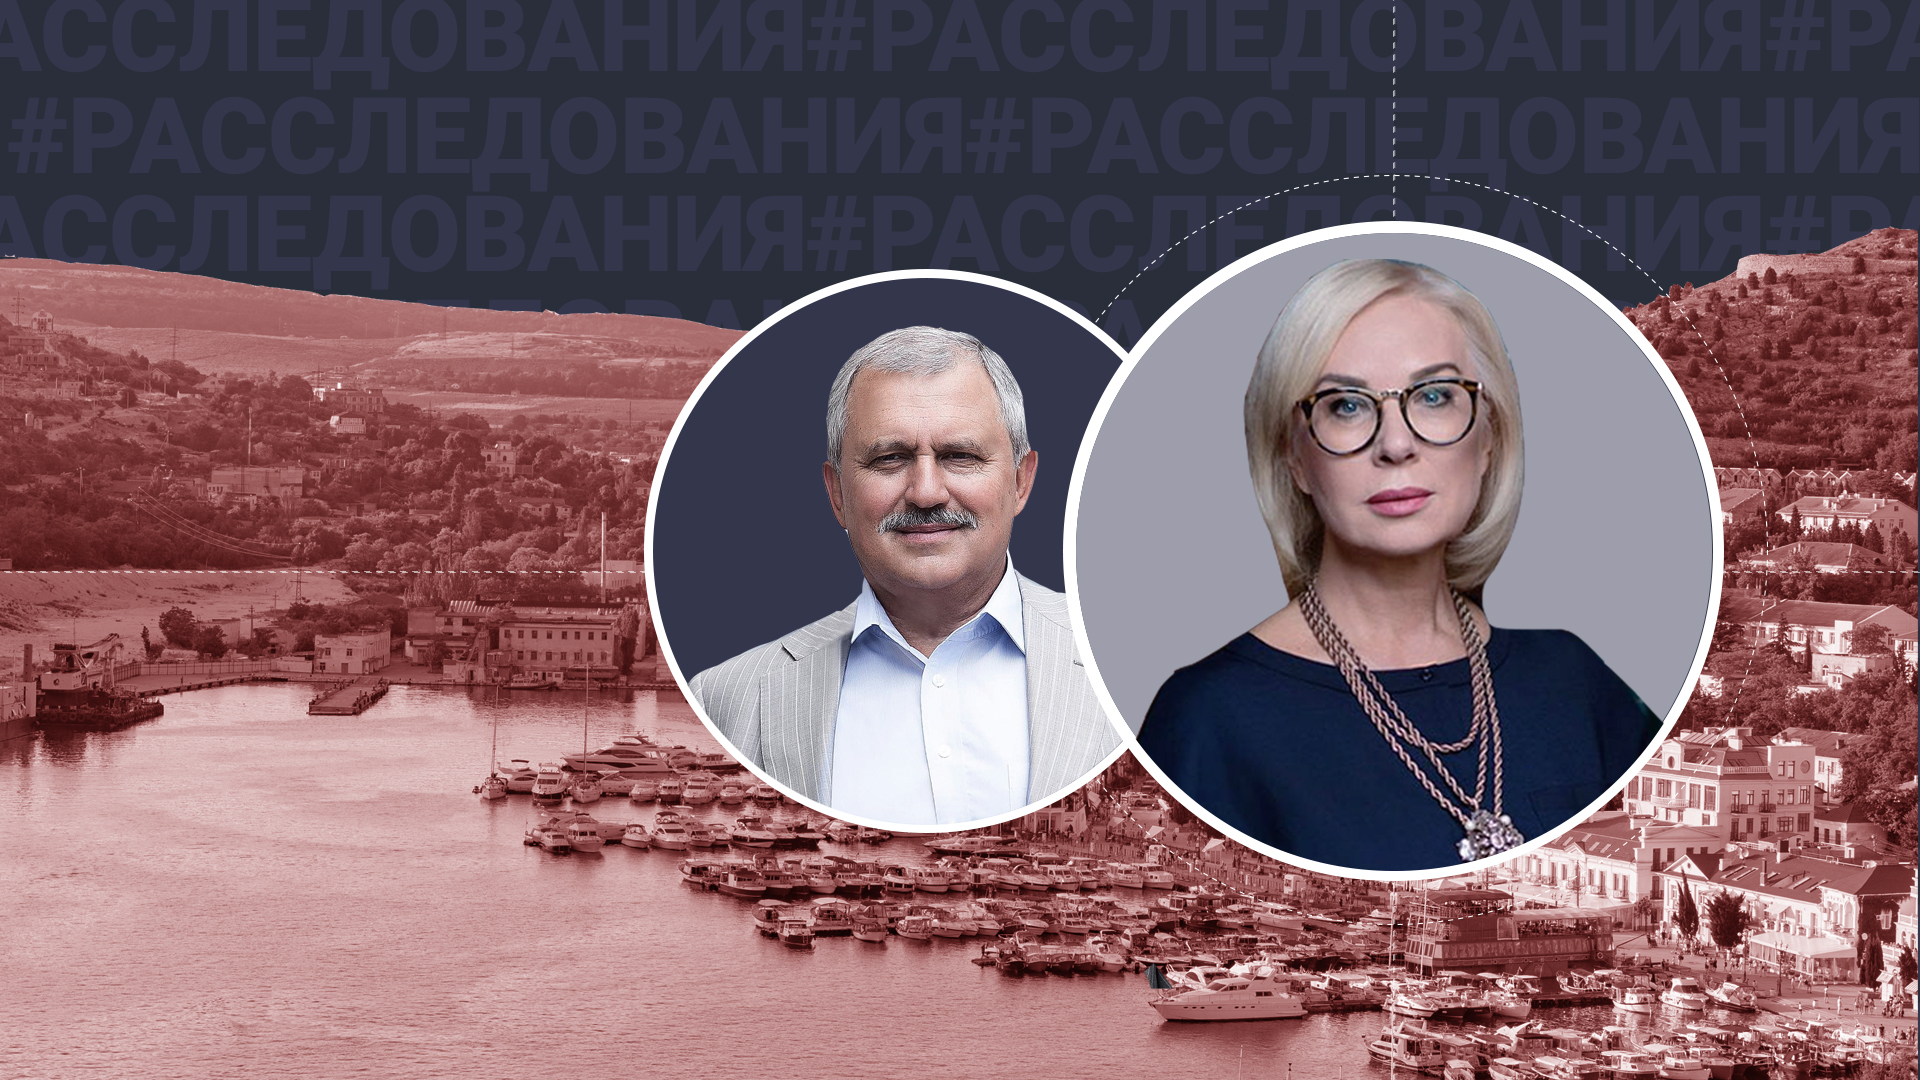 Яхт-клуб, аренда, стройка: Как украинские экс-чиновники зарабатывают в Крыму миллионы, пока идёт СВО